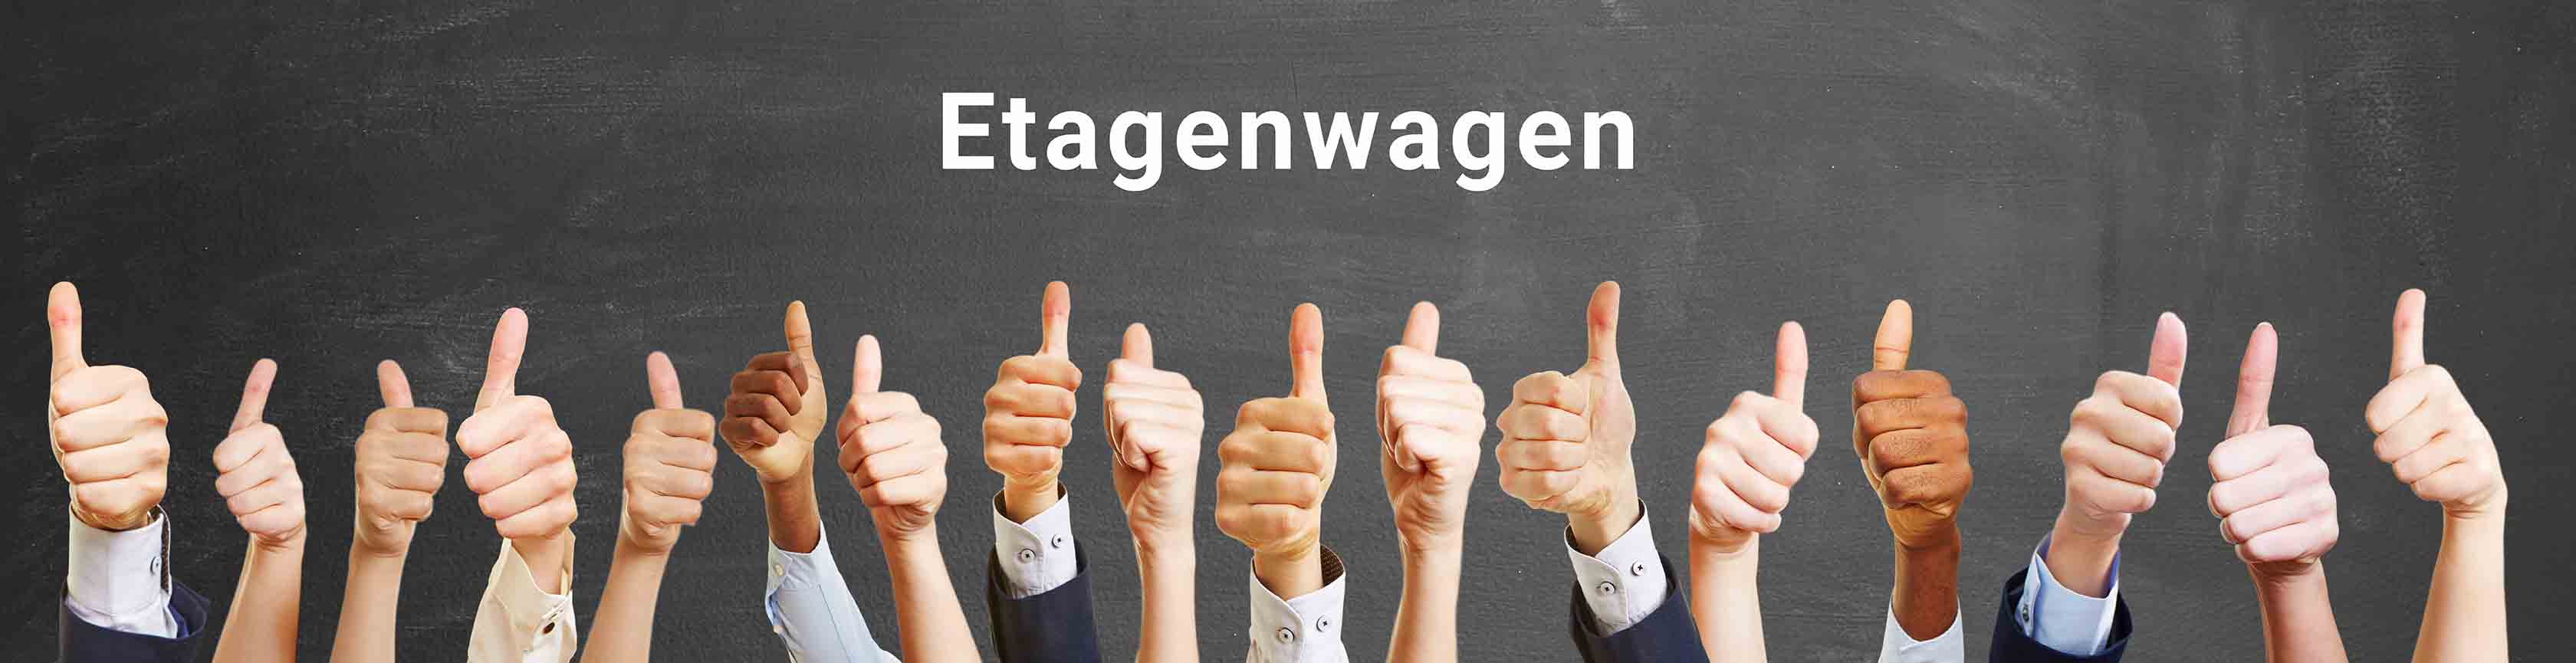 Etagenwagen_BERGER-Shop_ASt